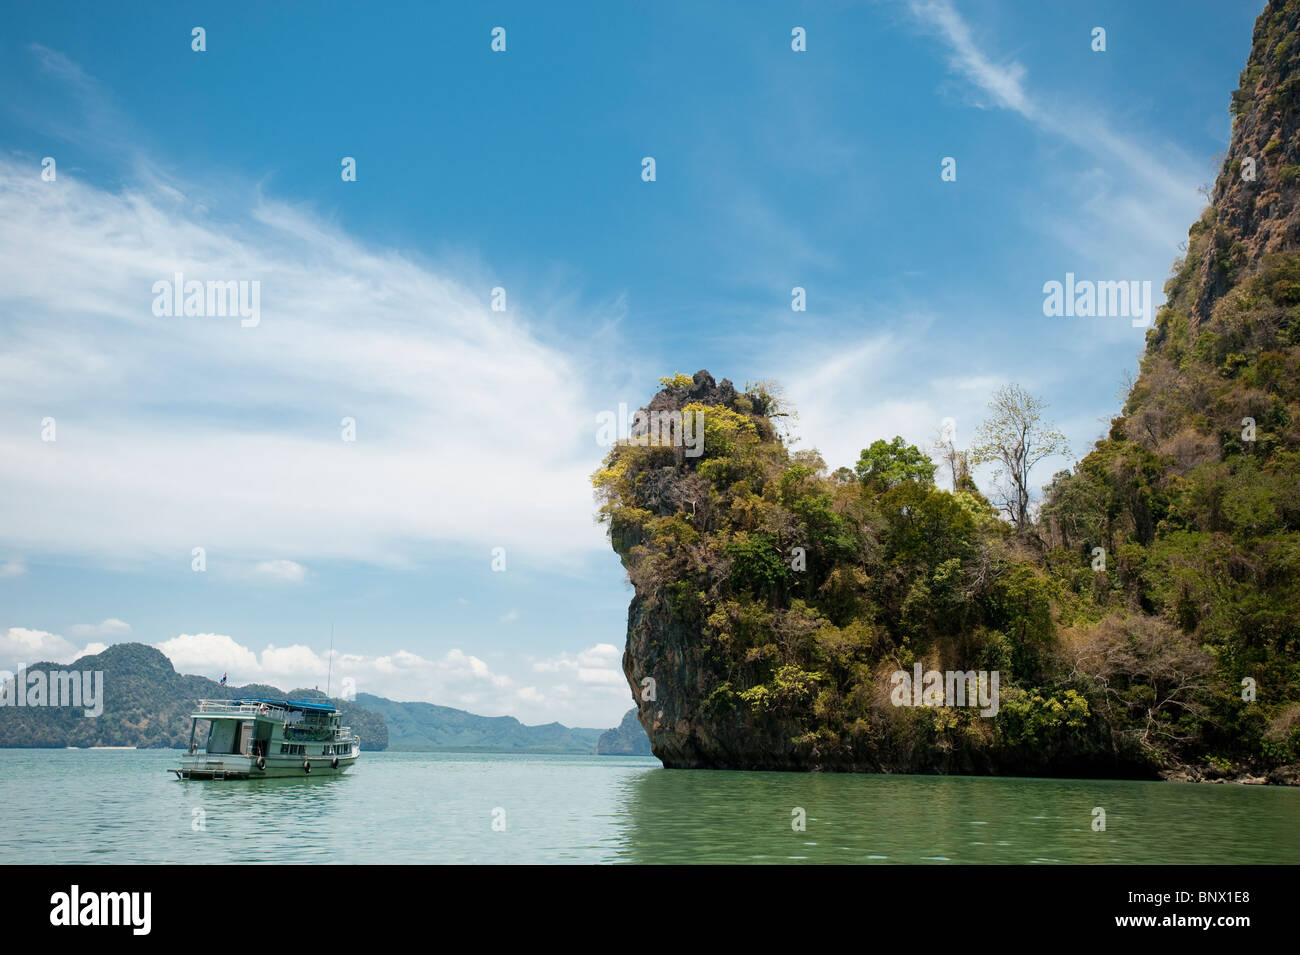 Imbarcazione turistica tra le insolite calcare o carso, isole nella Baia di Phang Nga, Thailandia Foto Stock